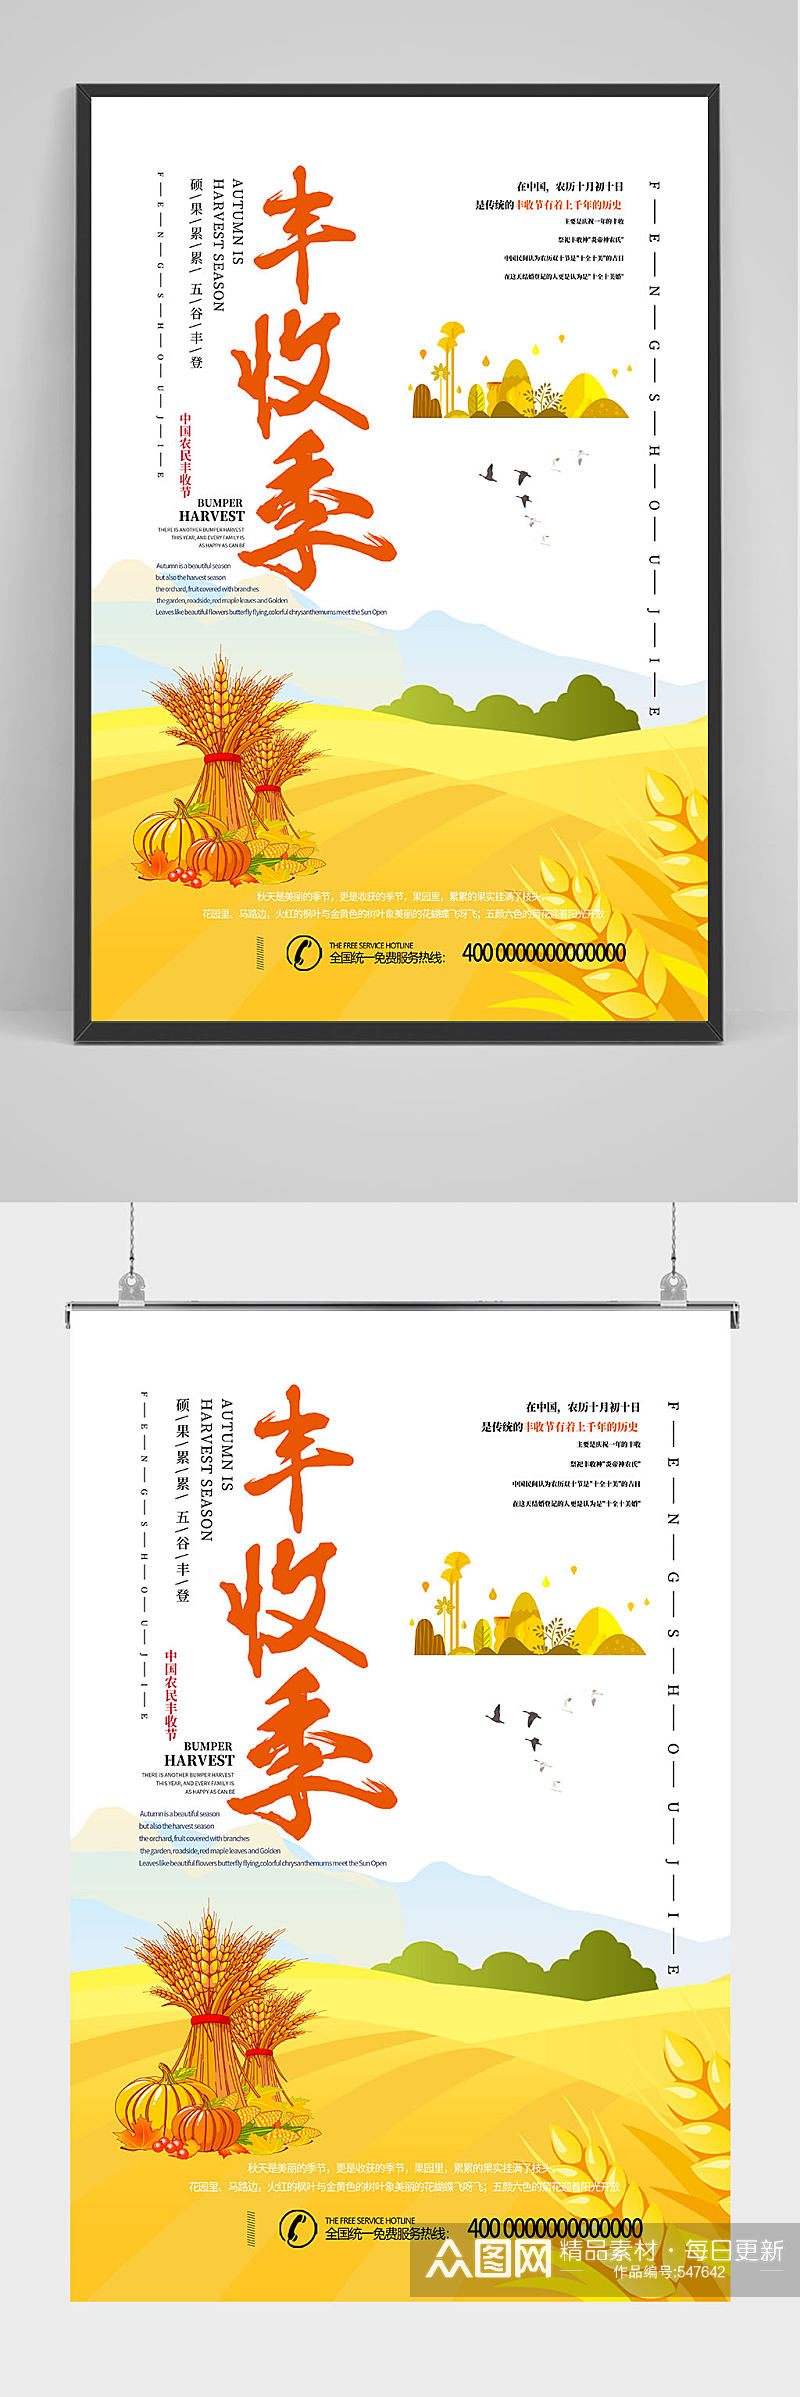 中国农名丰收季海报设计素材